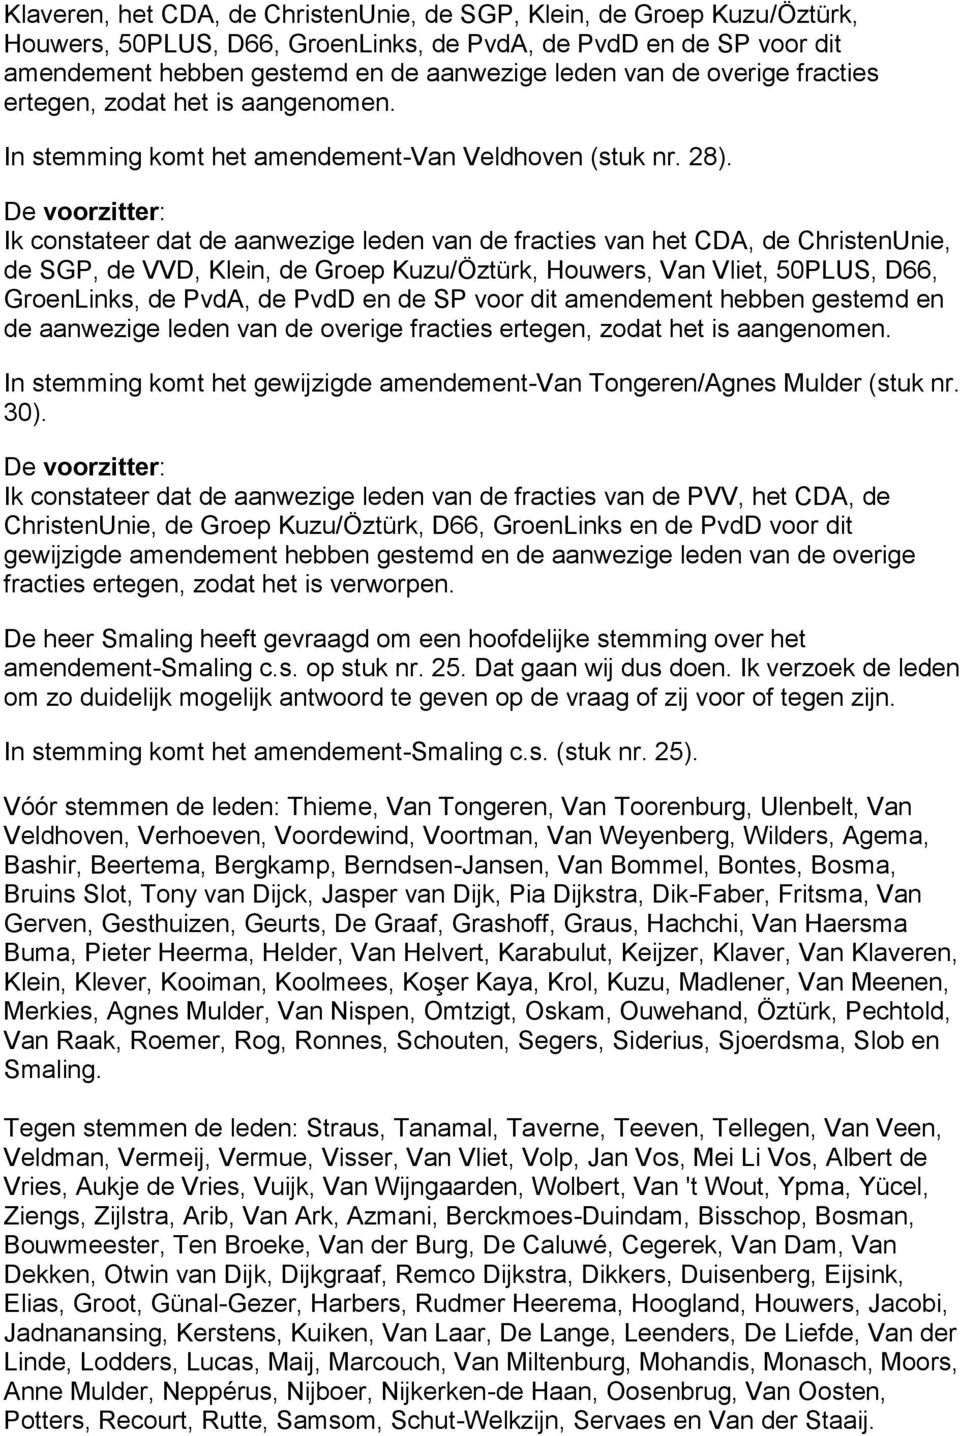 de SGP, de VVD, Klein, de Groep Kuzu/Öztürk, Houwers, Van Vliet, 50PLUS, D66, GroenLinks, de PvdA, de PvdD en de SP voor dit amendement hebben gestemd en de aanwezige leden van de overige fracties